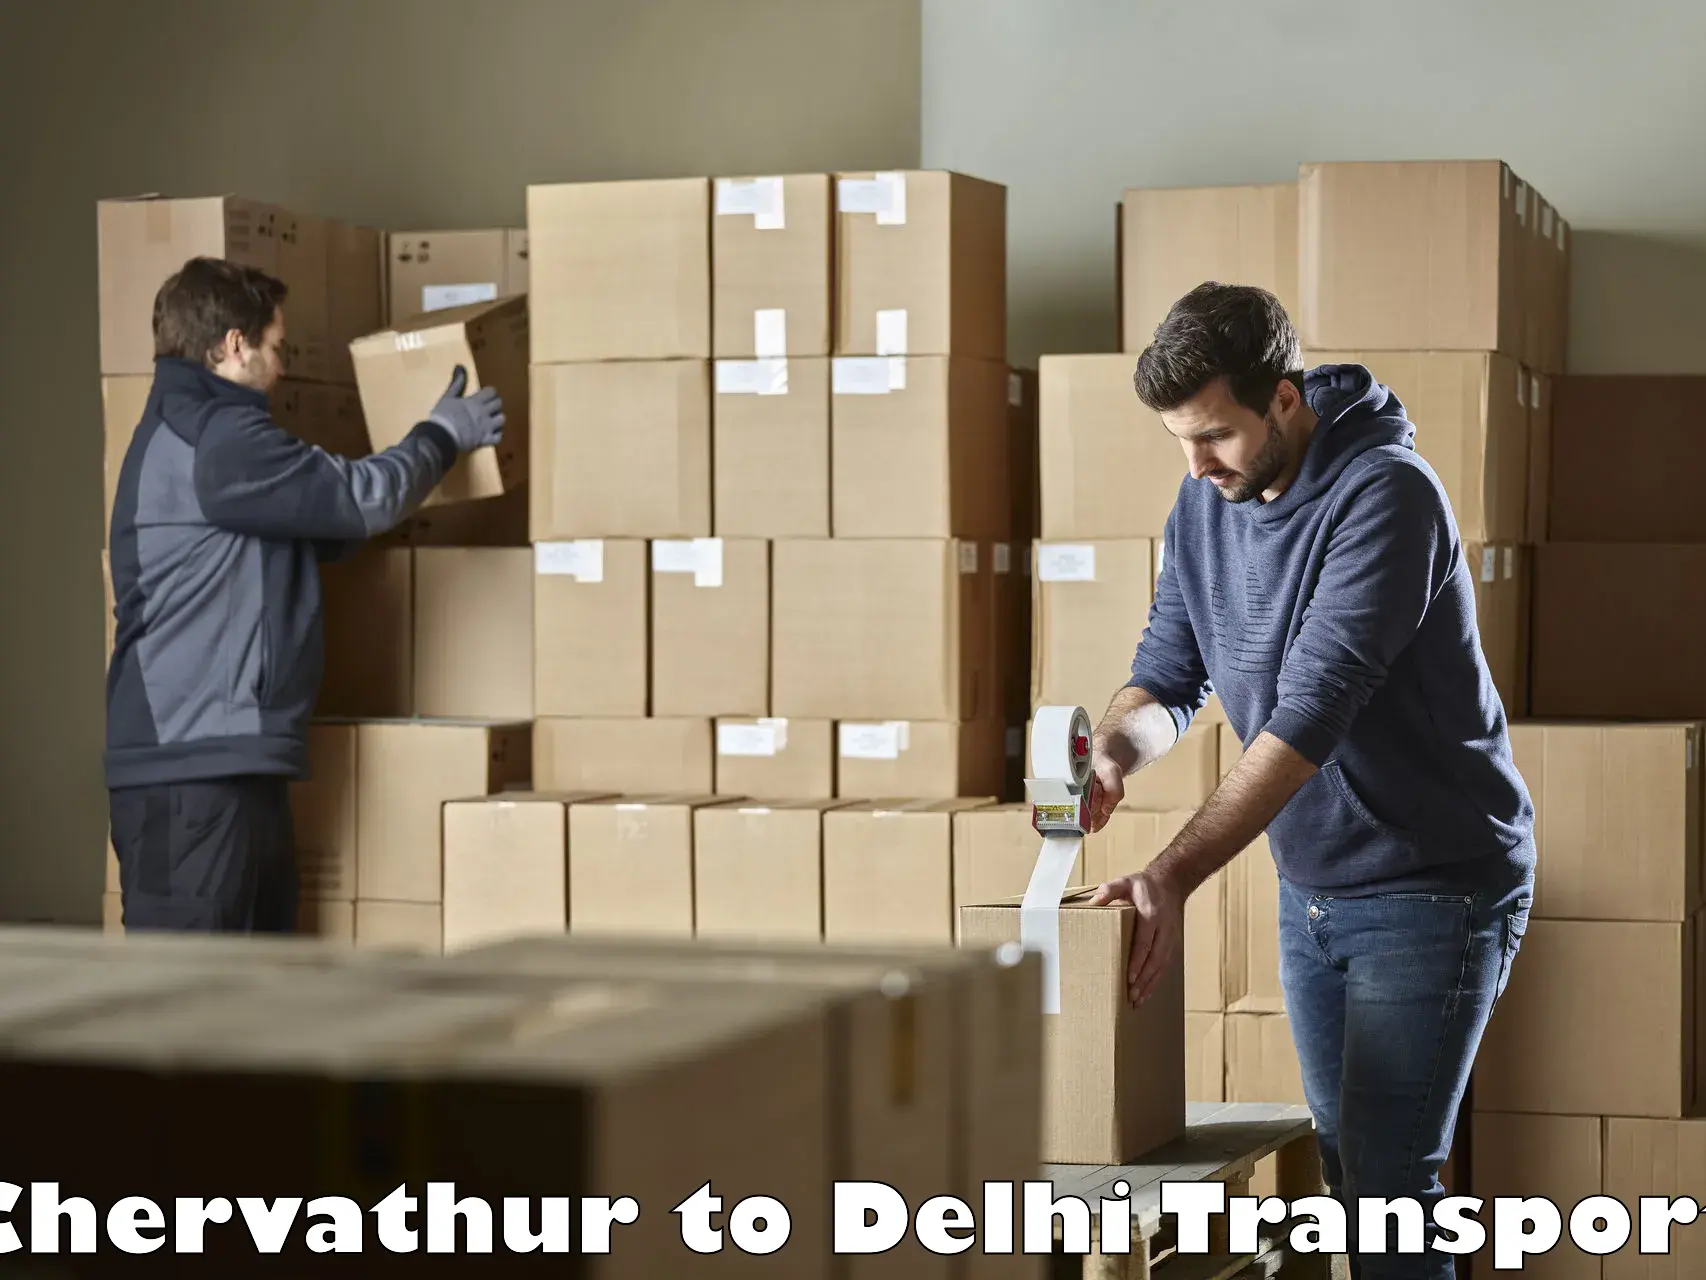 Parcel transport services Chervathur to University of Delhi